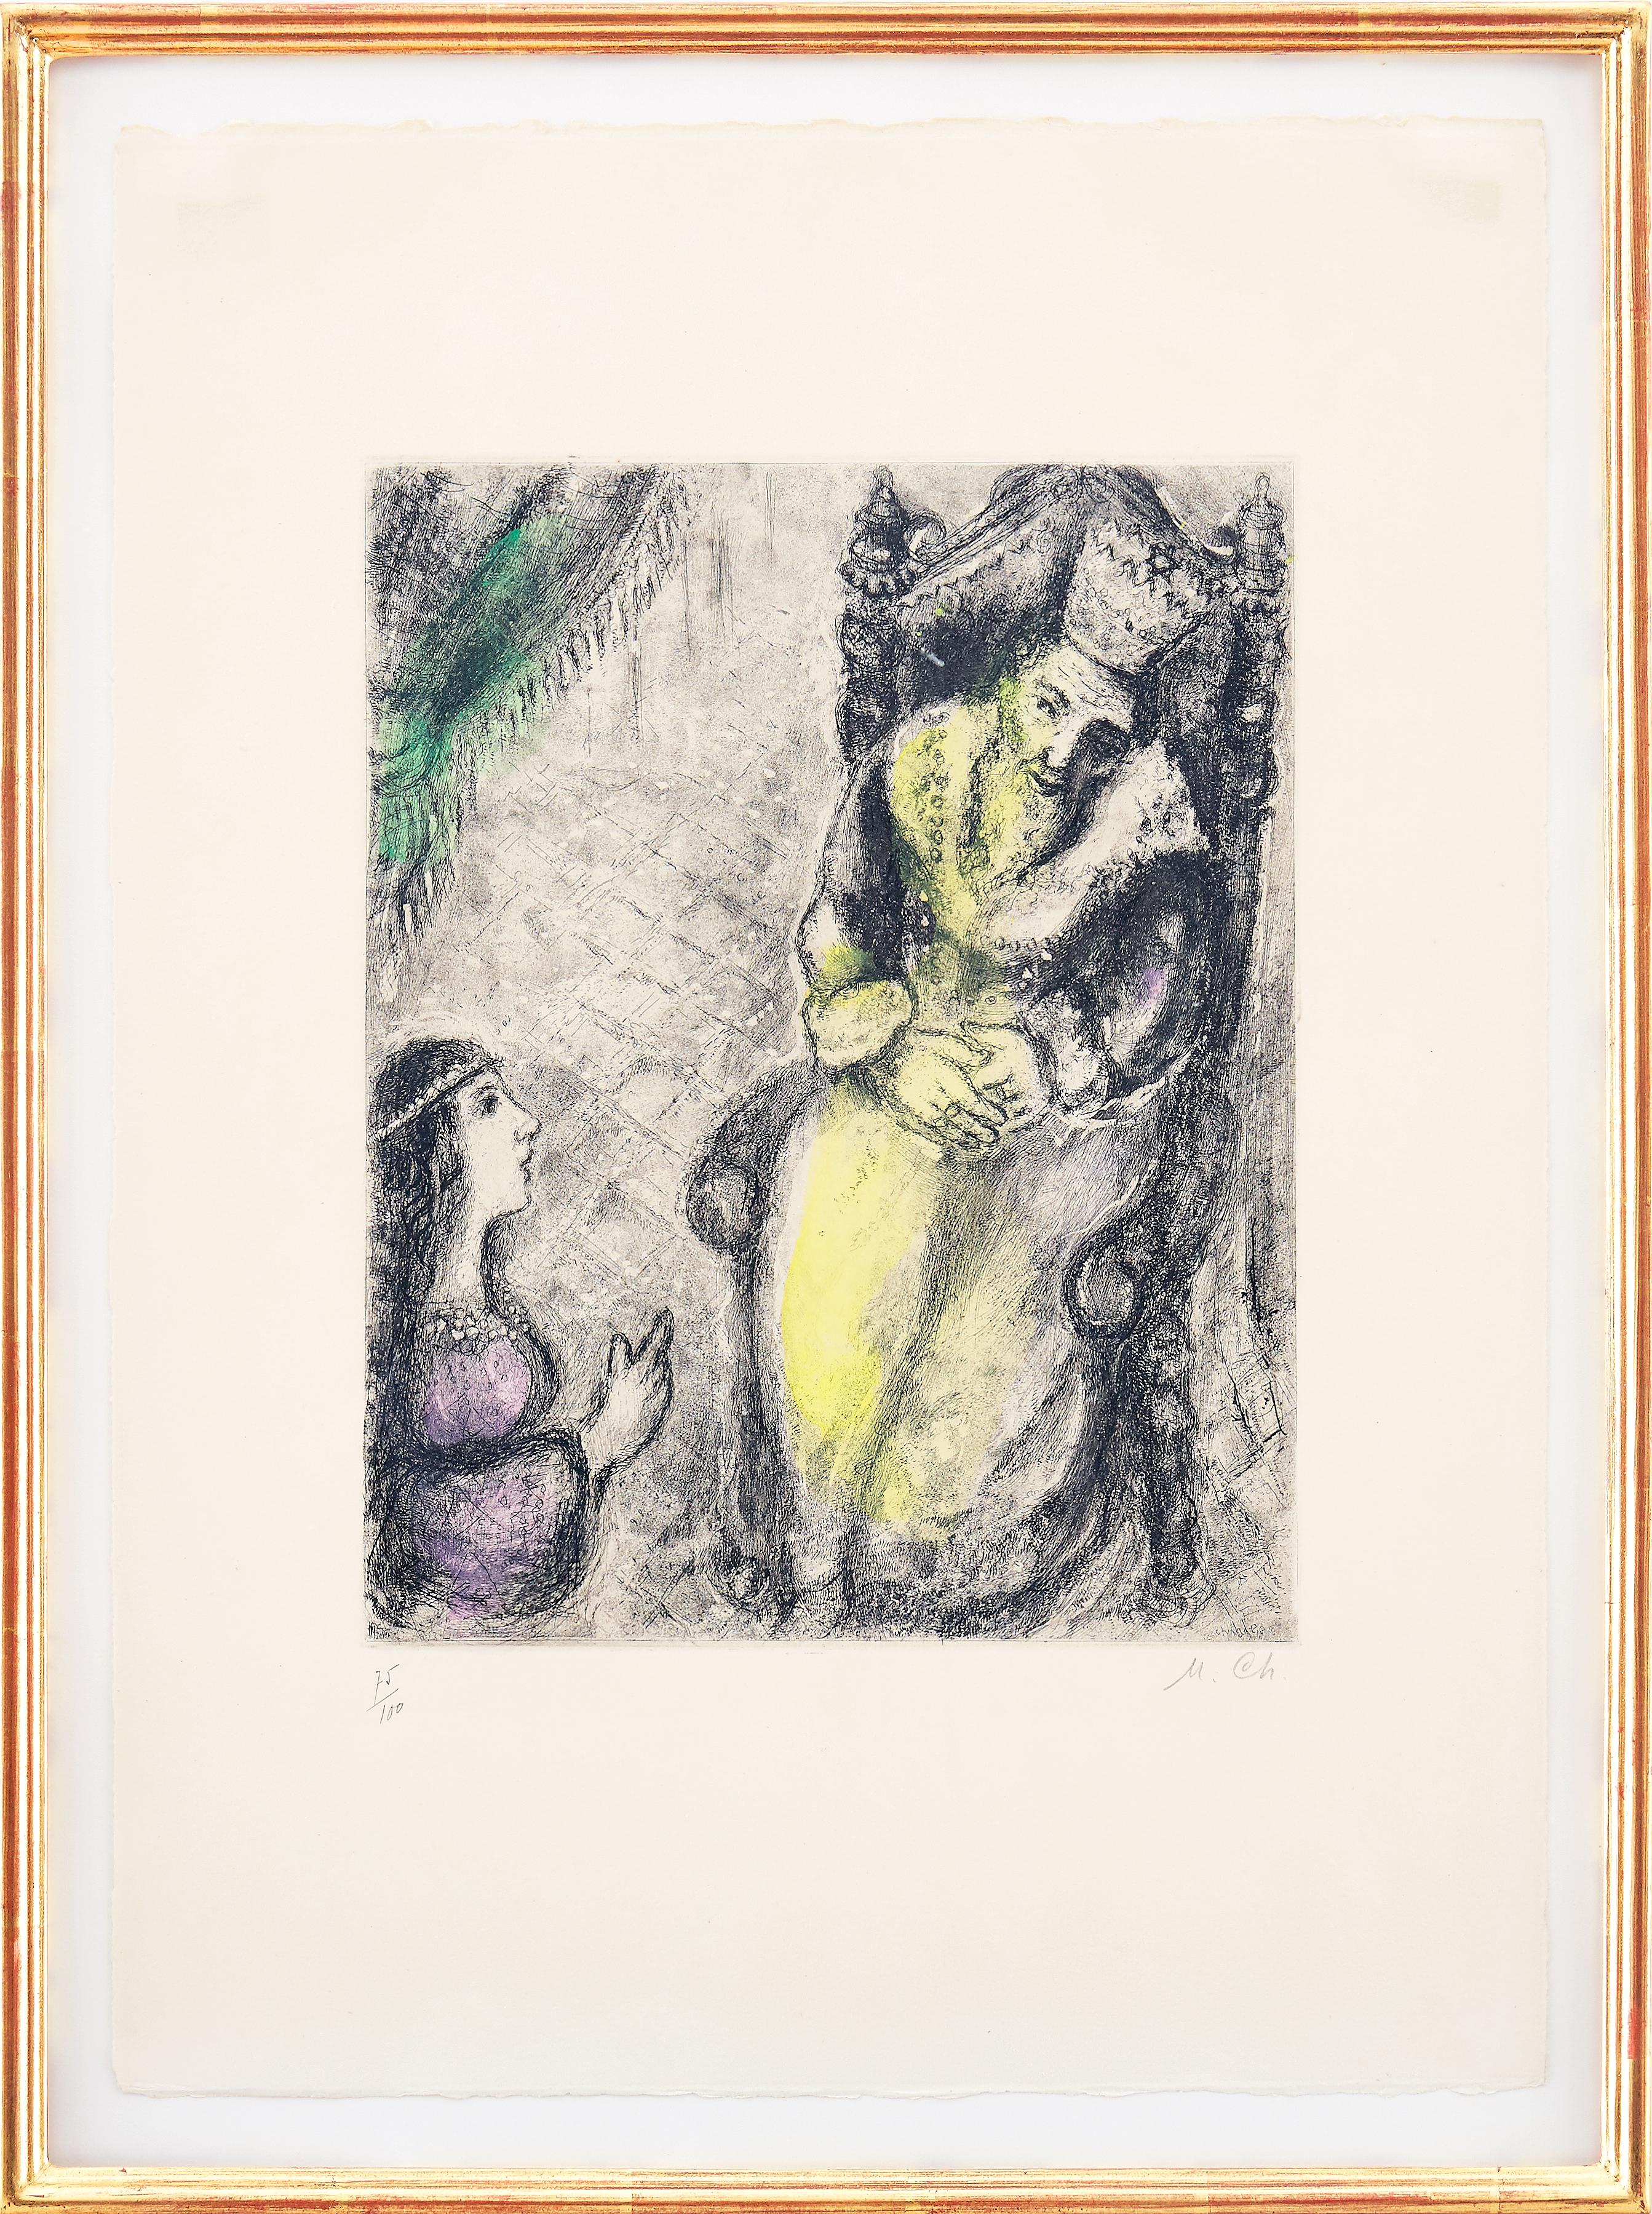 Marc Chagall - Bad-Scheba zu den Füßen Davids - Original handsignierte Radierung
1958
Gedruckt von Tériade
Abmessungen: 54 x 39 cm 
Handsigniert und nummeriert 
handkoloriert
Auflage: 100
Referenz: Cramer 30. 
Radierung mit Handkolorierung, um 1930,